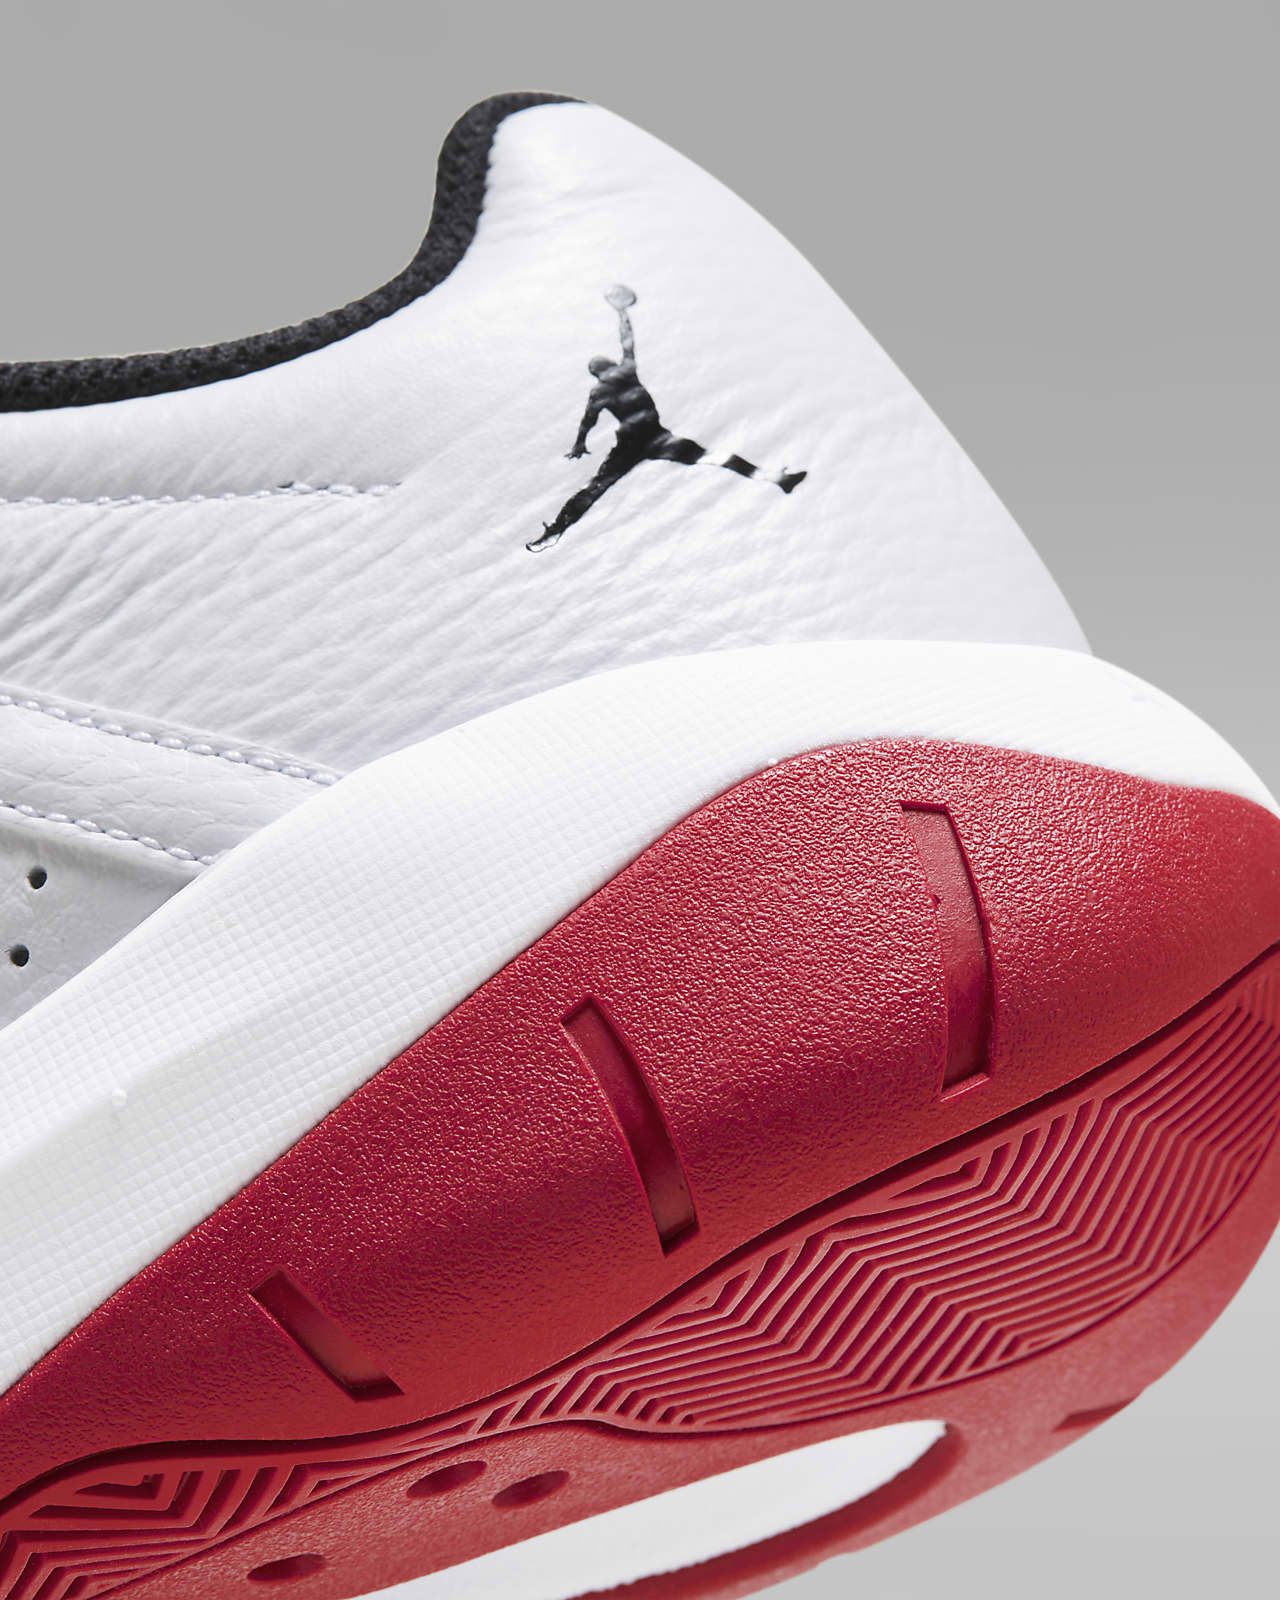 Nike Men's Jordan XII Retro Baseball Cleat, Black/White/Silver, 11 D(M) US  